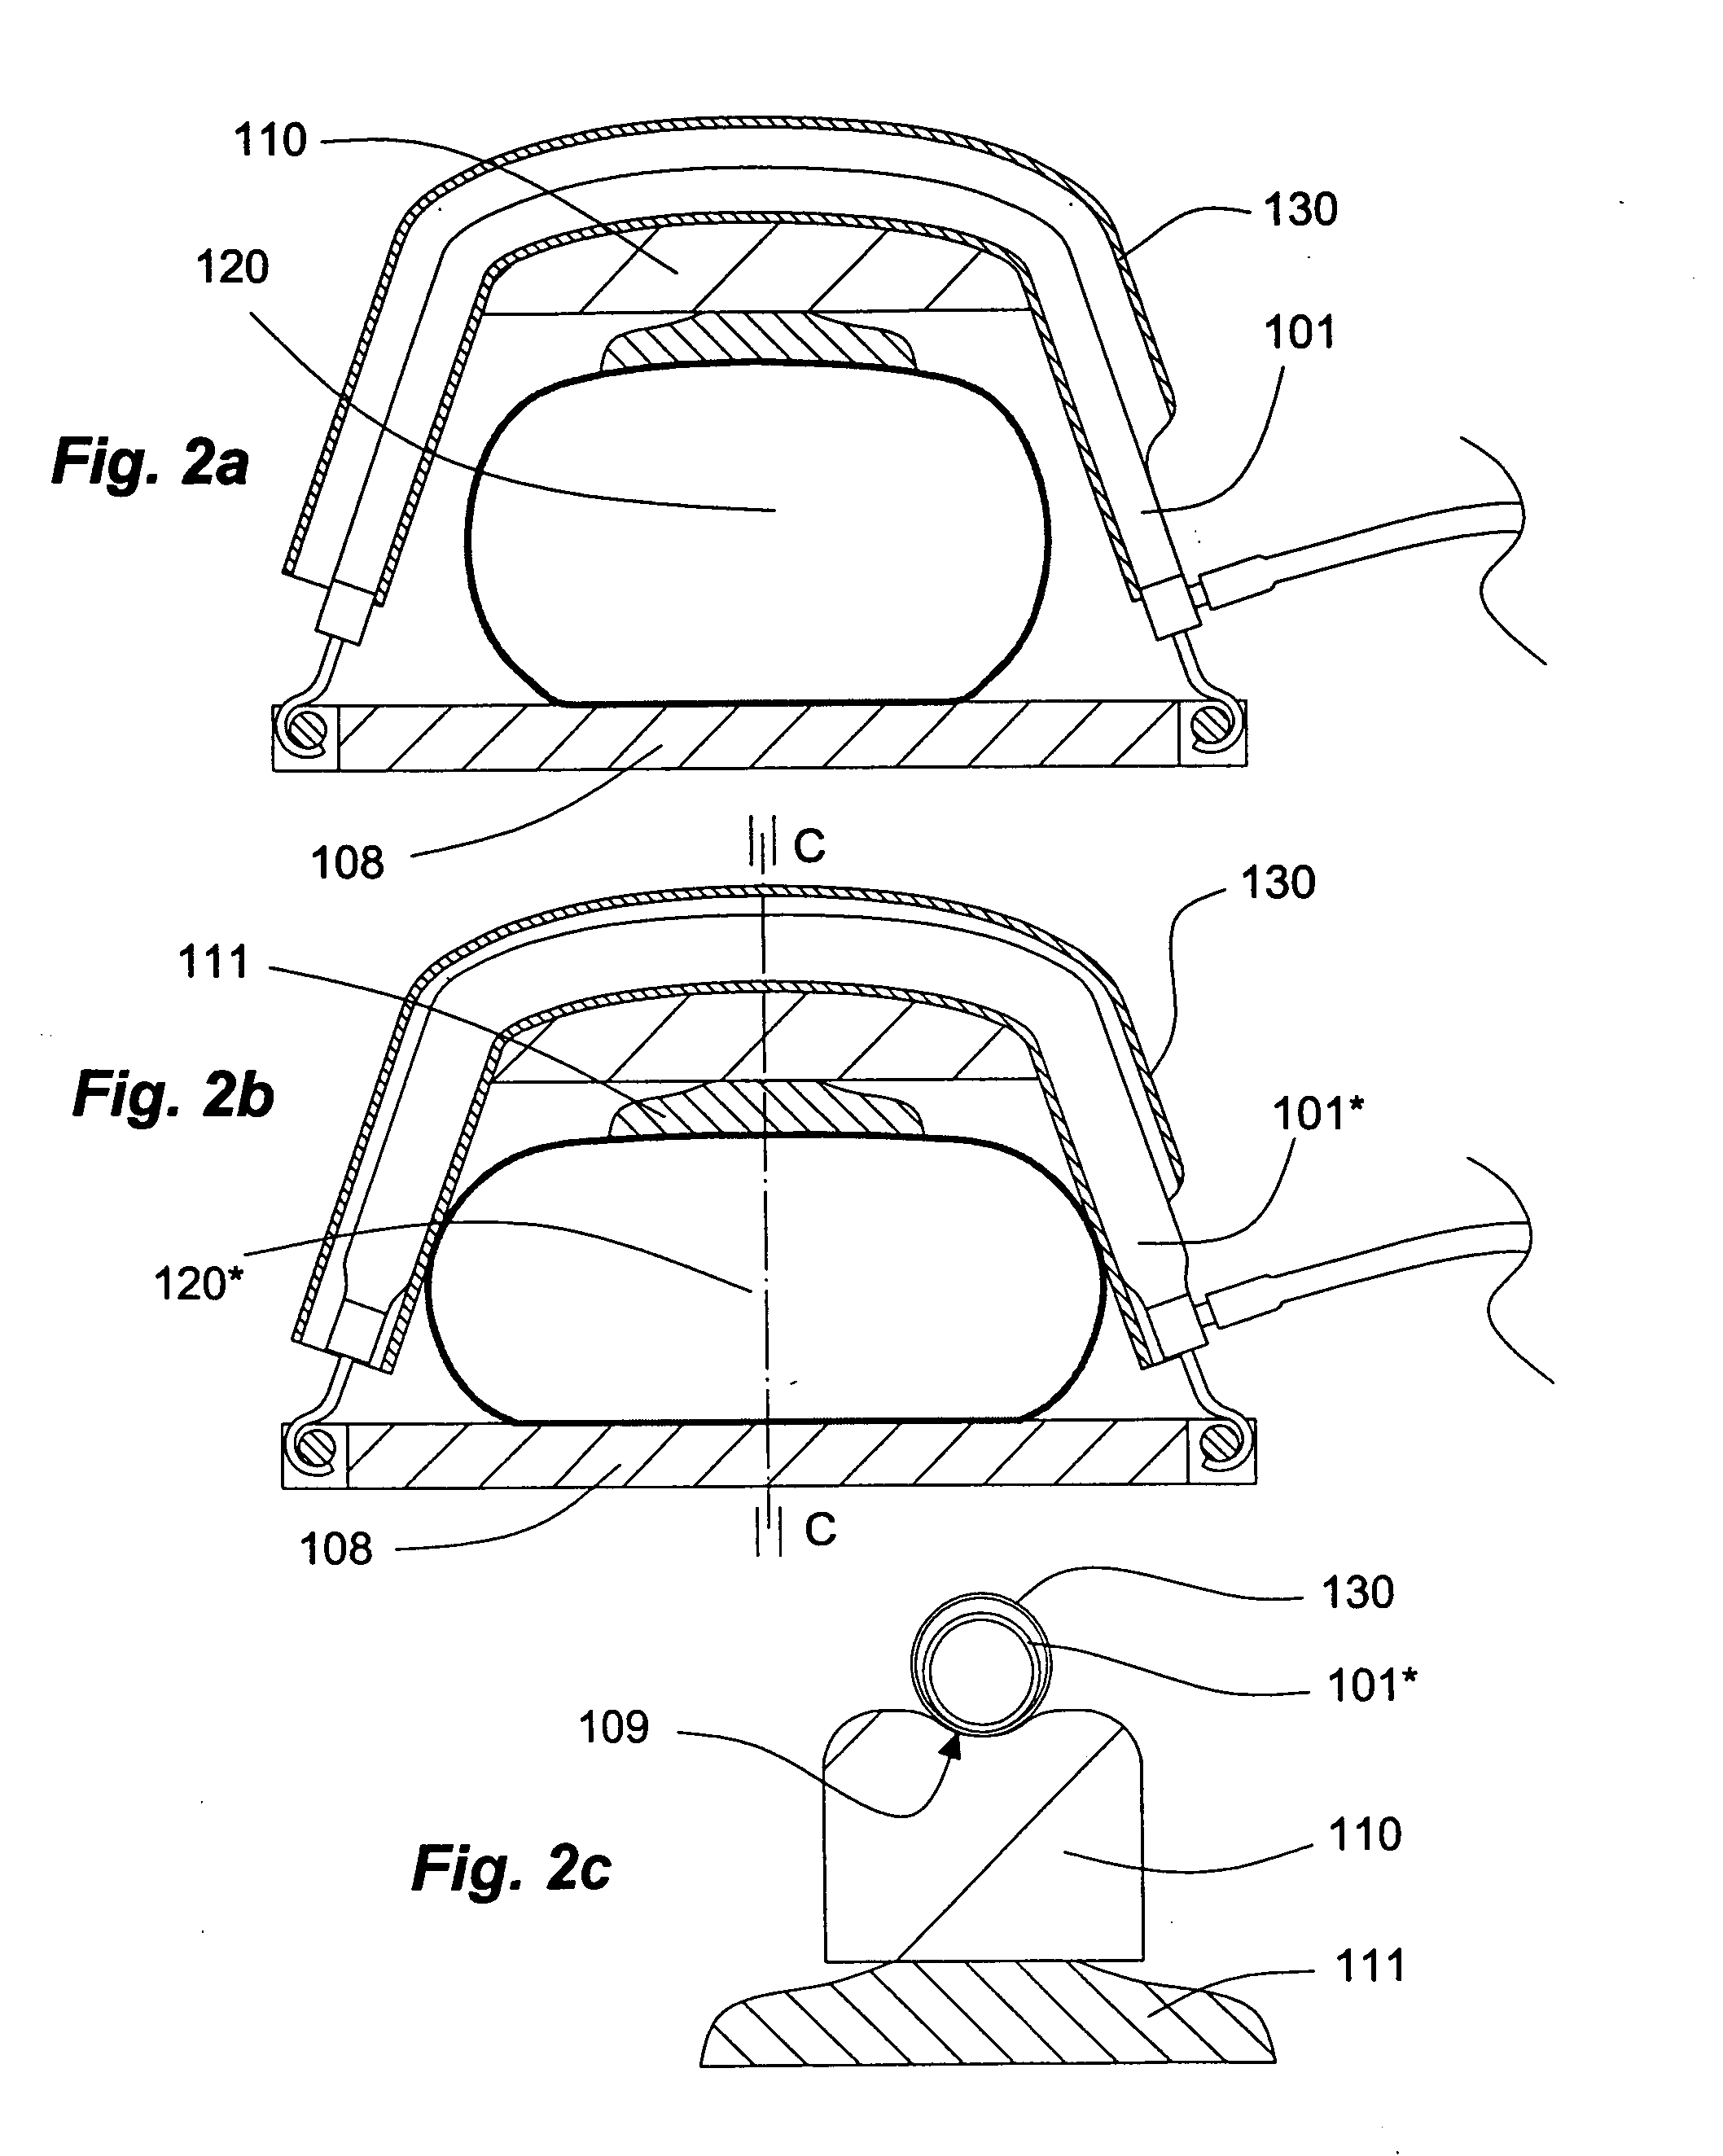 Gas-driven chest compression apparatus